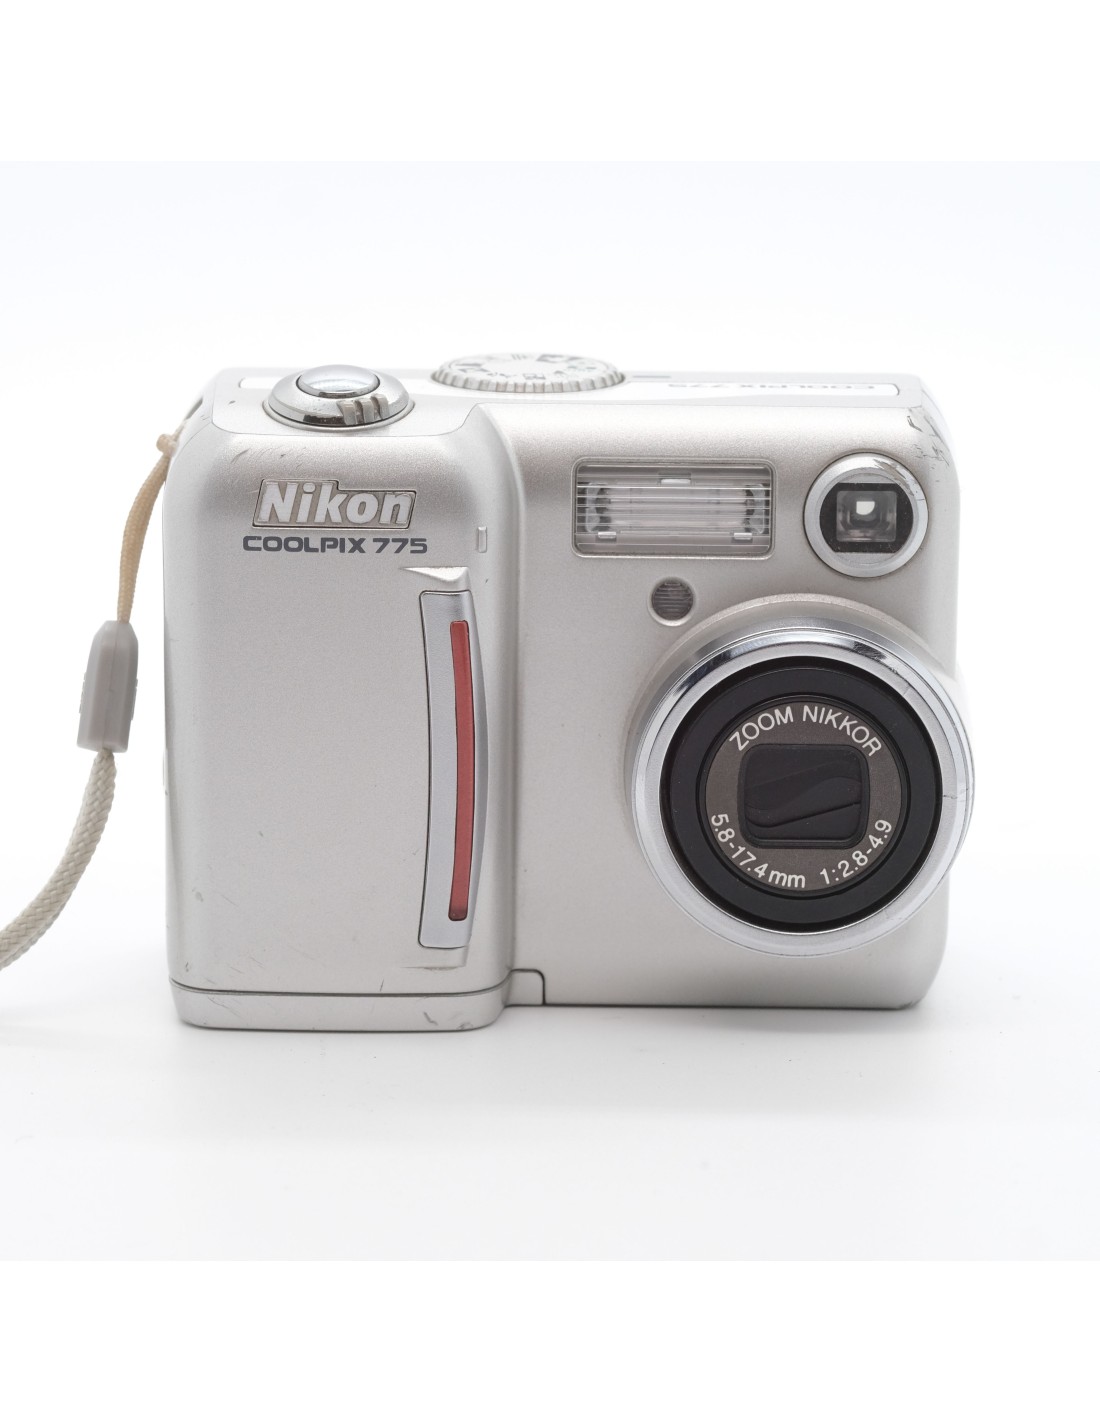 Nikon Coolpix 775 digital camera